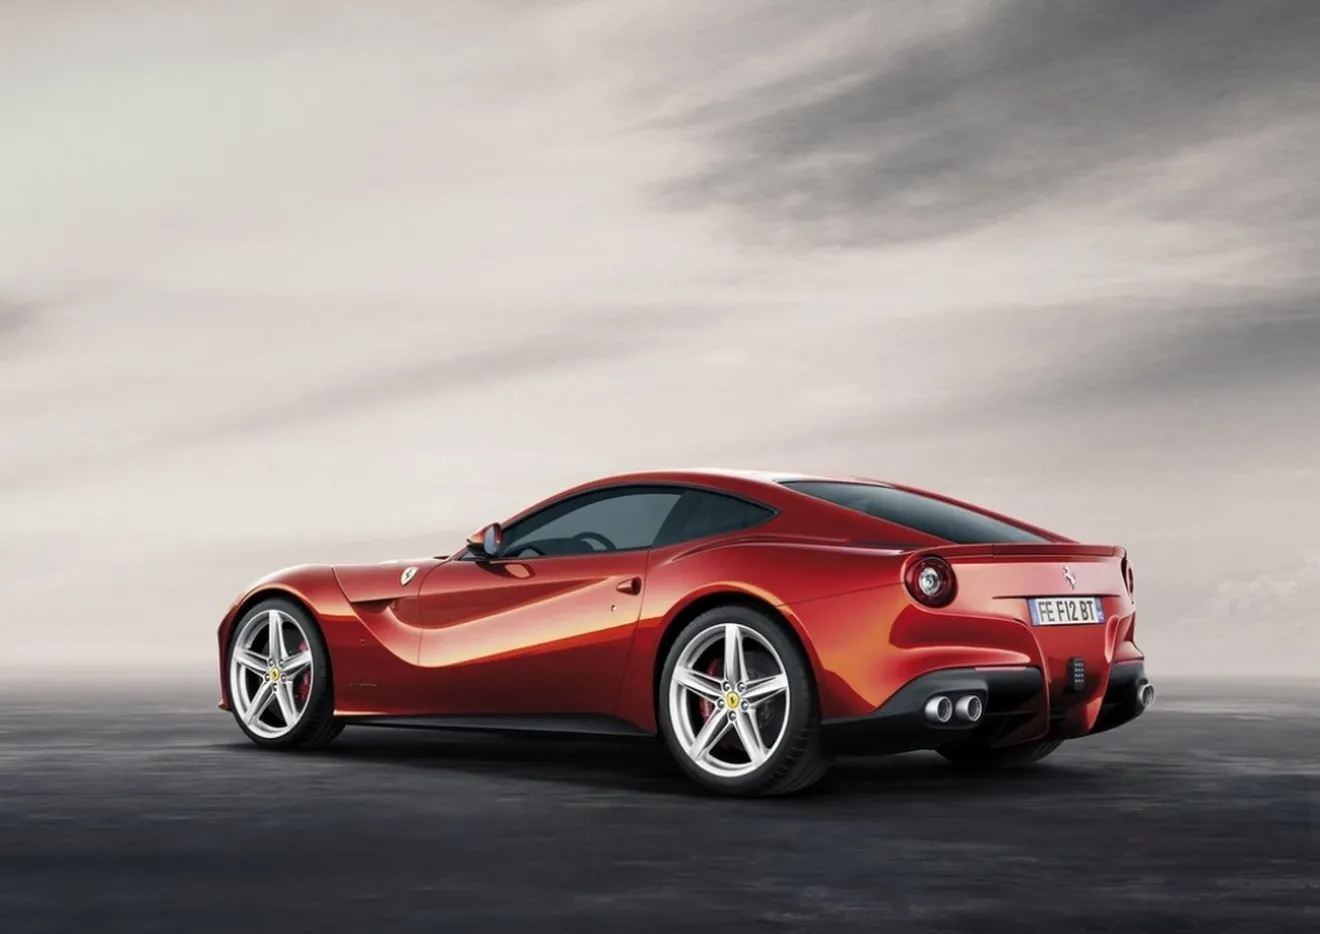 Ferrari planea un exclusivo modelo limitado a 10 unidades para Estados Unidos